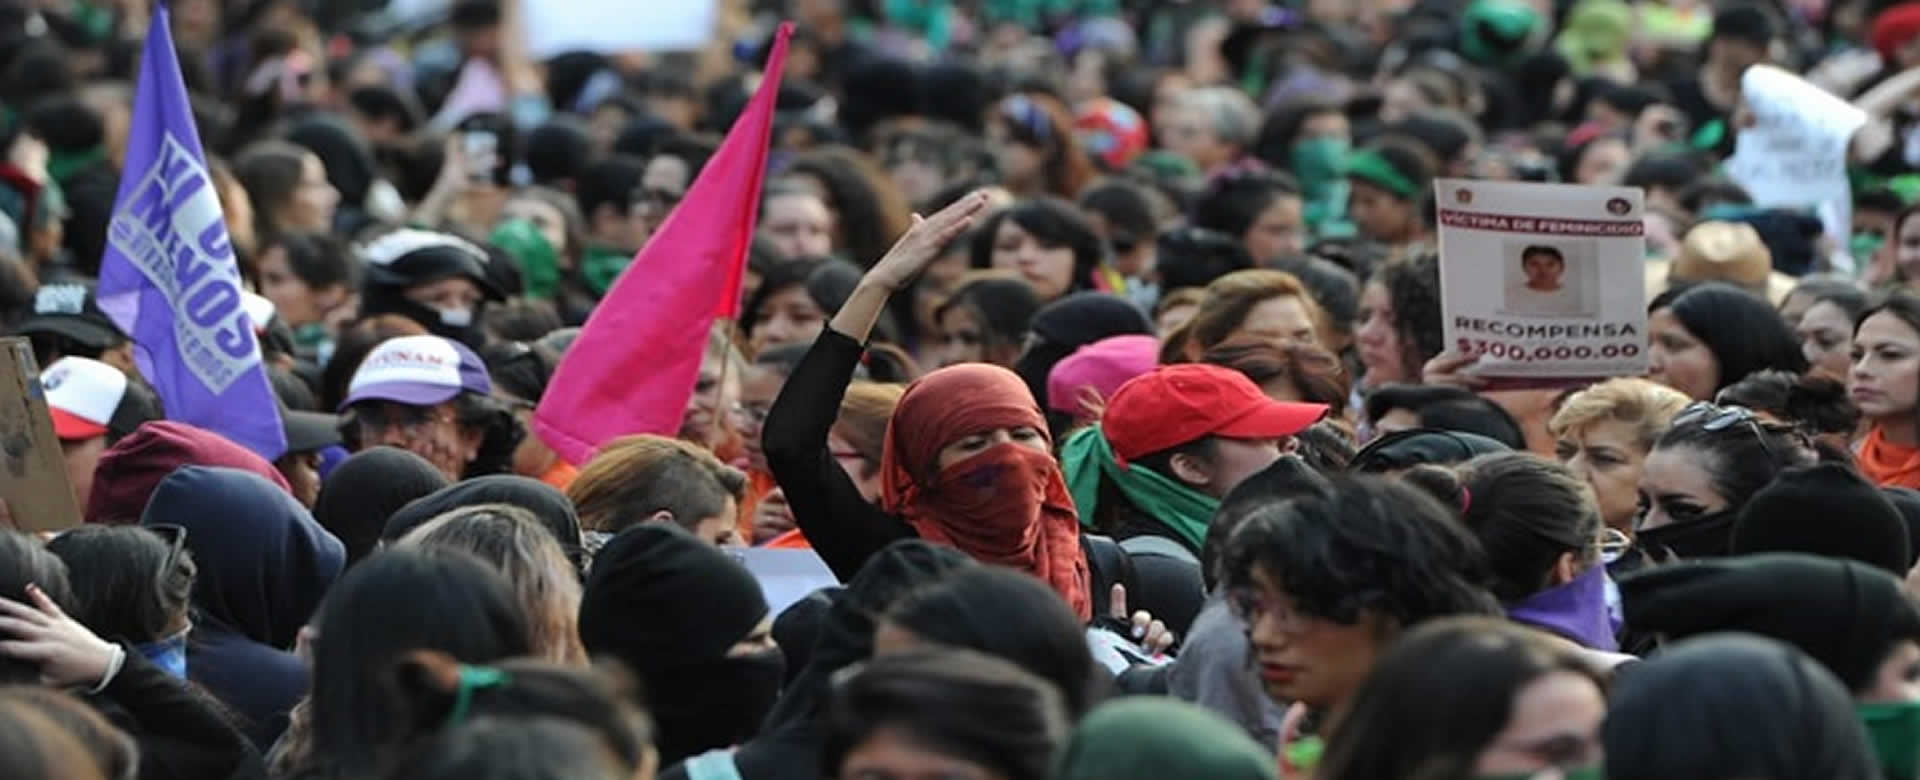 Países alzan su voz para que cese la violencia contra la mujer